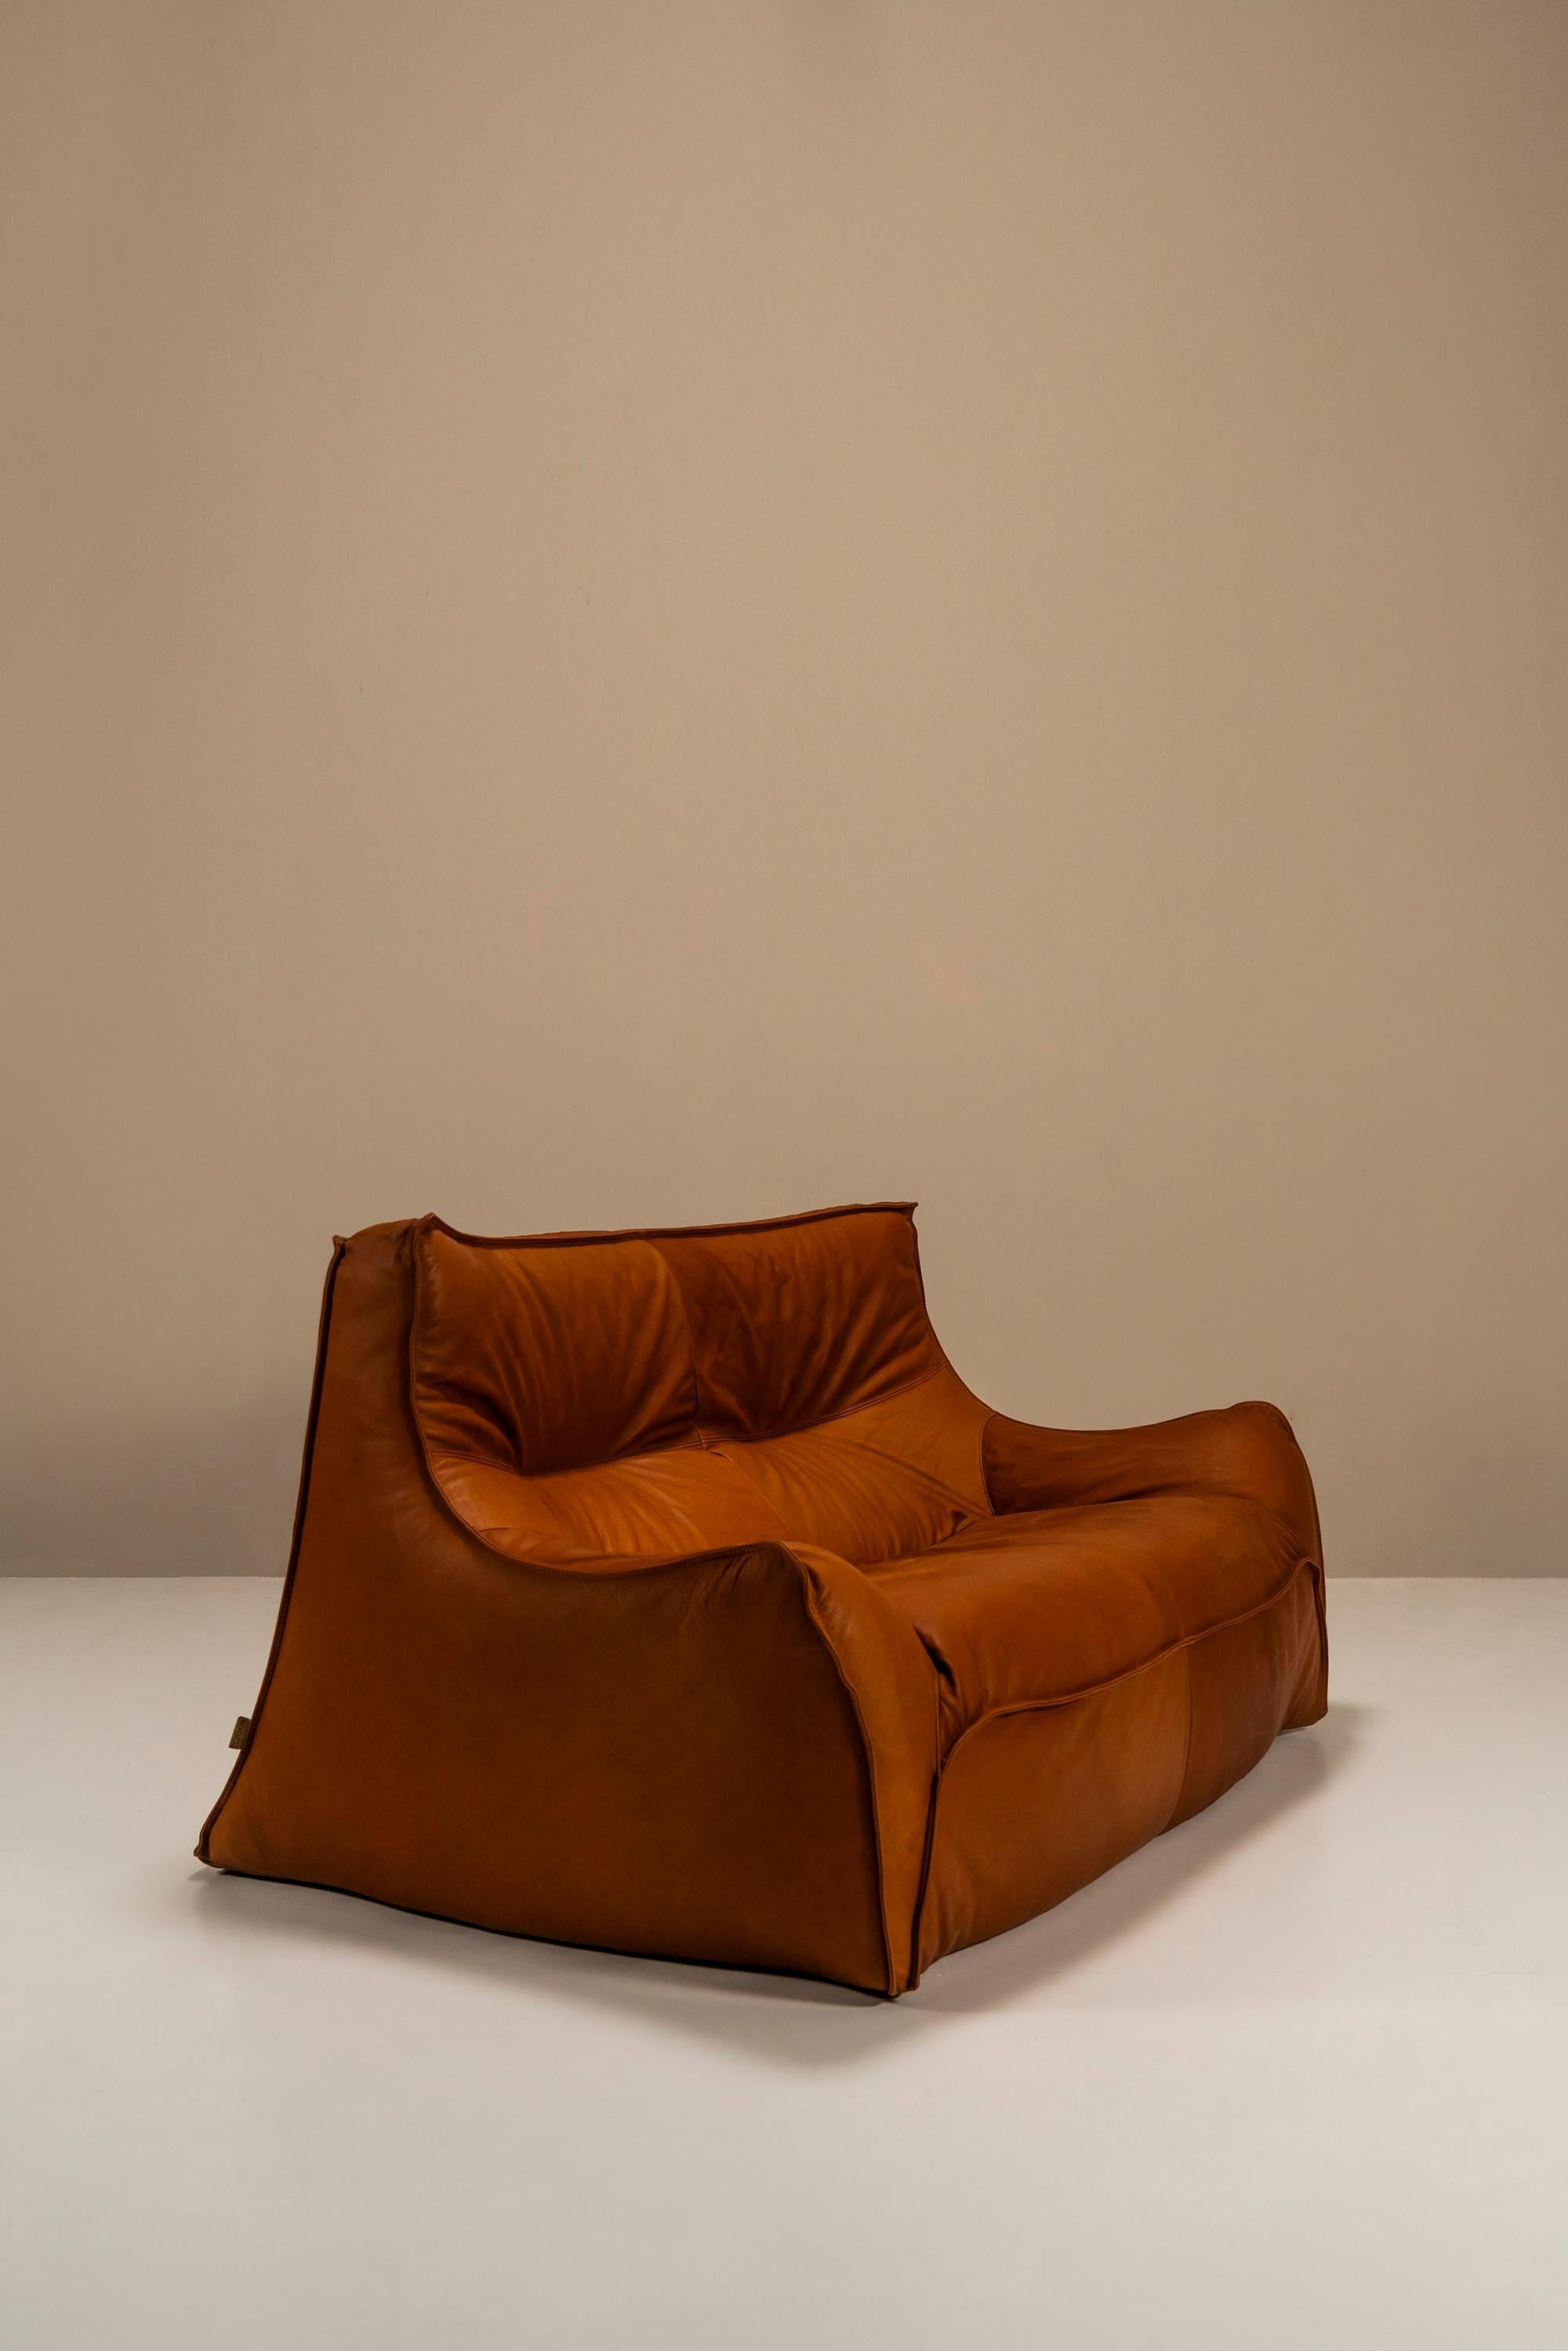 Two-Seater Sofa Model “Satan” By Bernard Govin For Ligne Roset, France 1970s For Sale 1